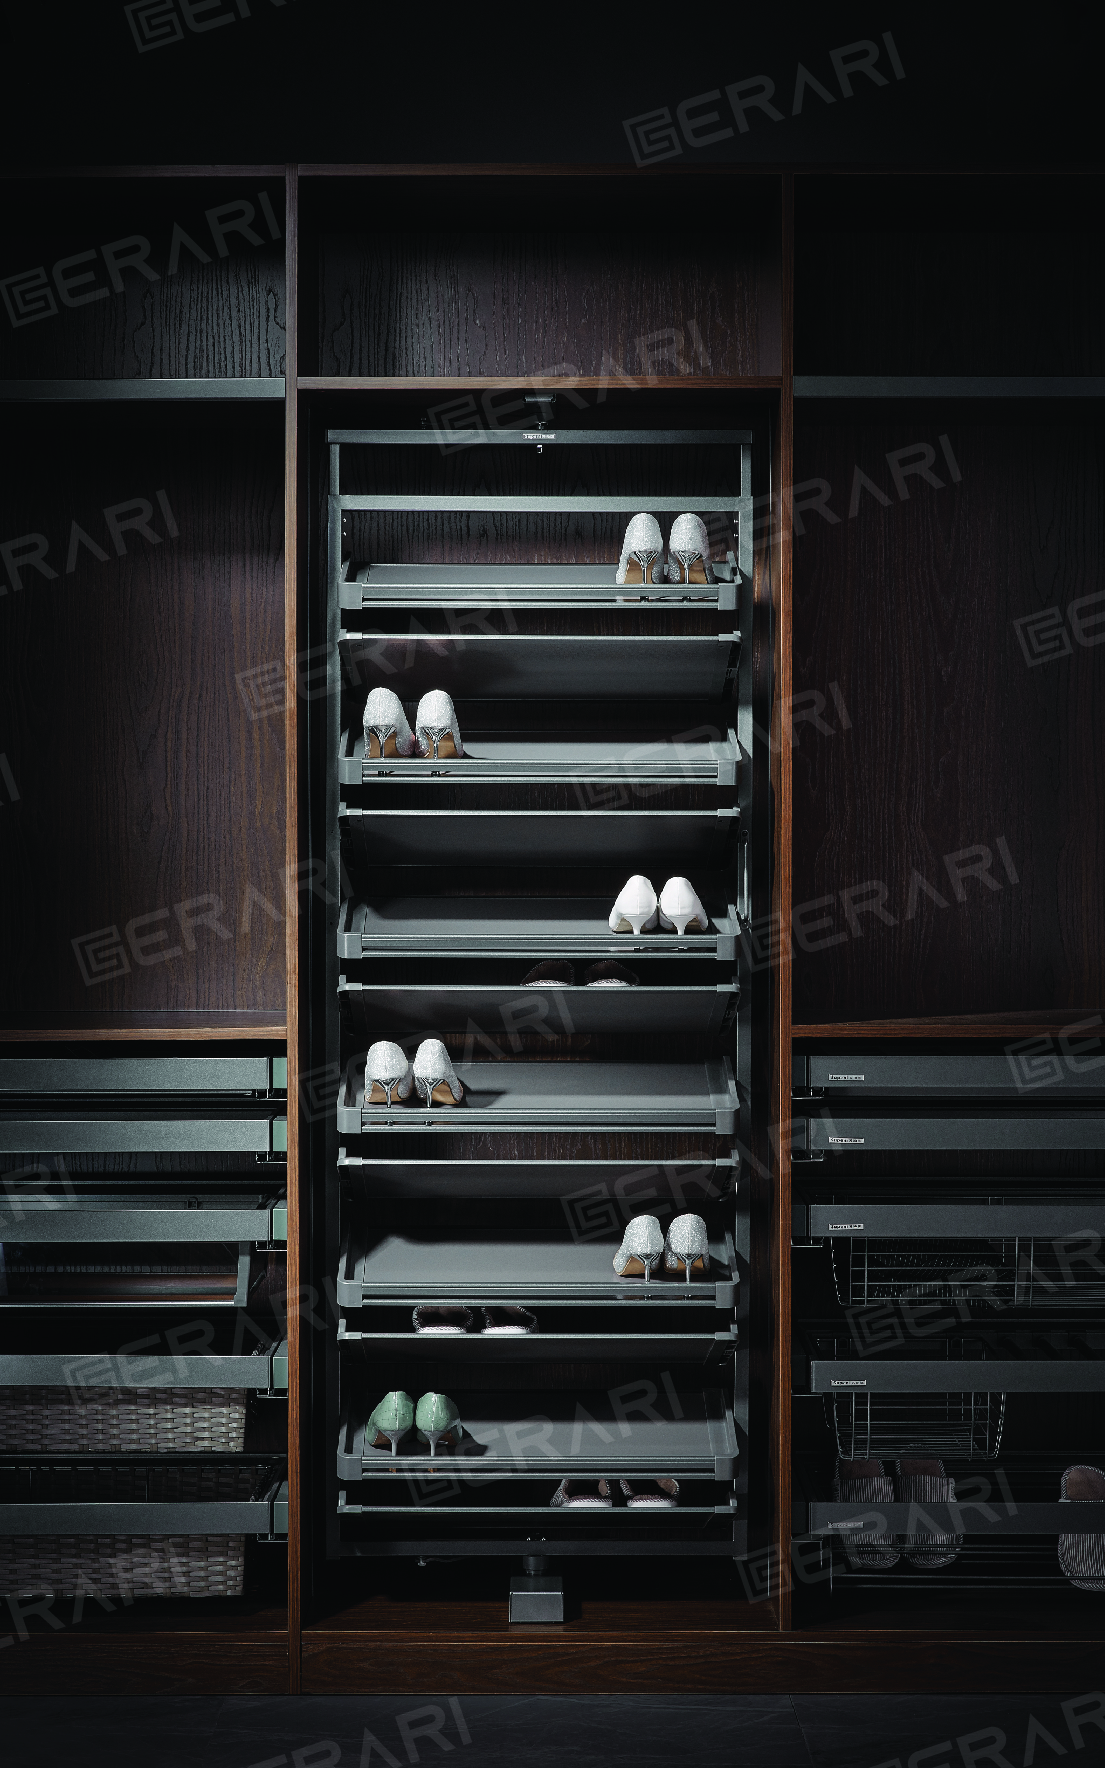 Phụ kiện của tủ áo - Kệ để giày thông minh bề mặt bọc da cao cấp loại 10 tầng mã GW010-10 thương hiệu Gerari